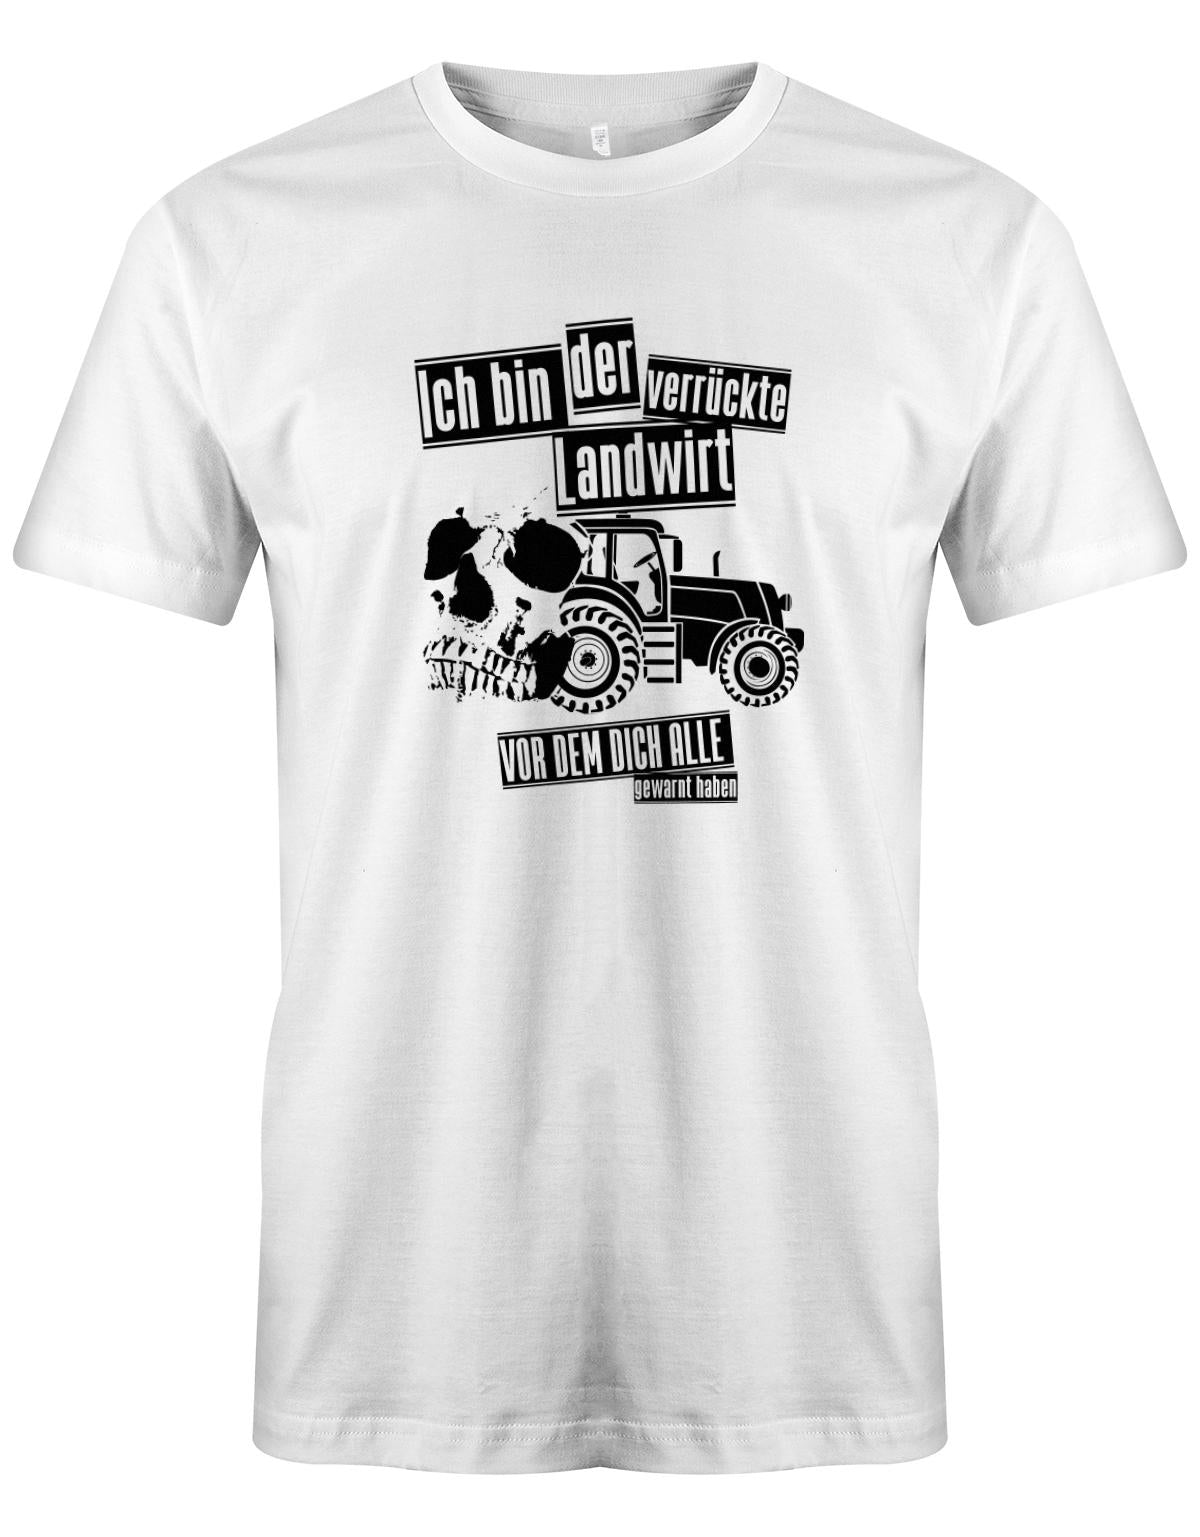 Landwirtschaft Shirt Männer - Ich bin der verrückte Landwirt vor dem dich alle gewarnt haben. Weiss